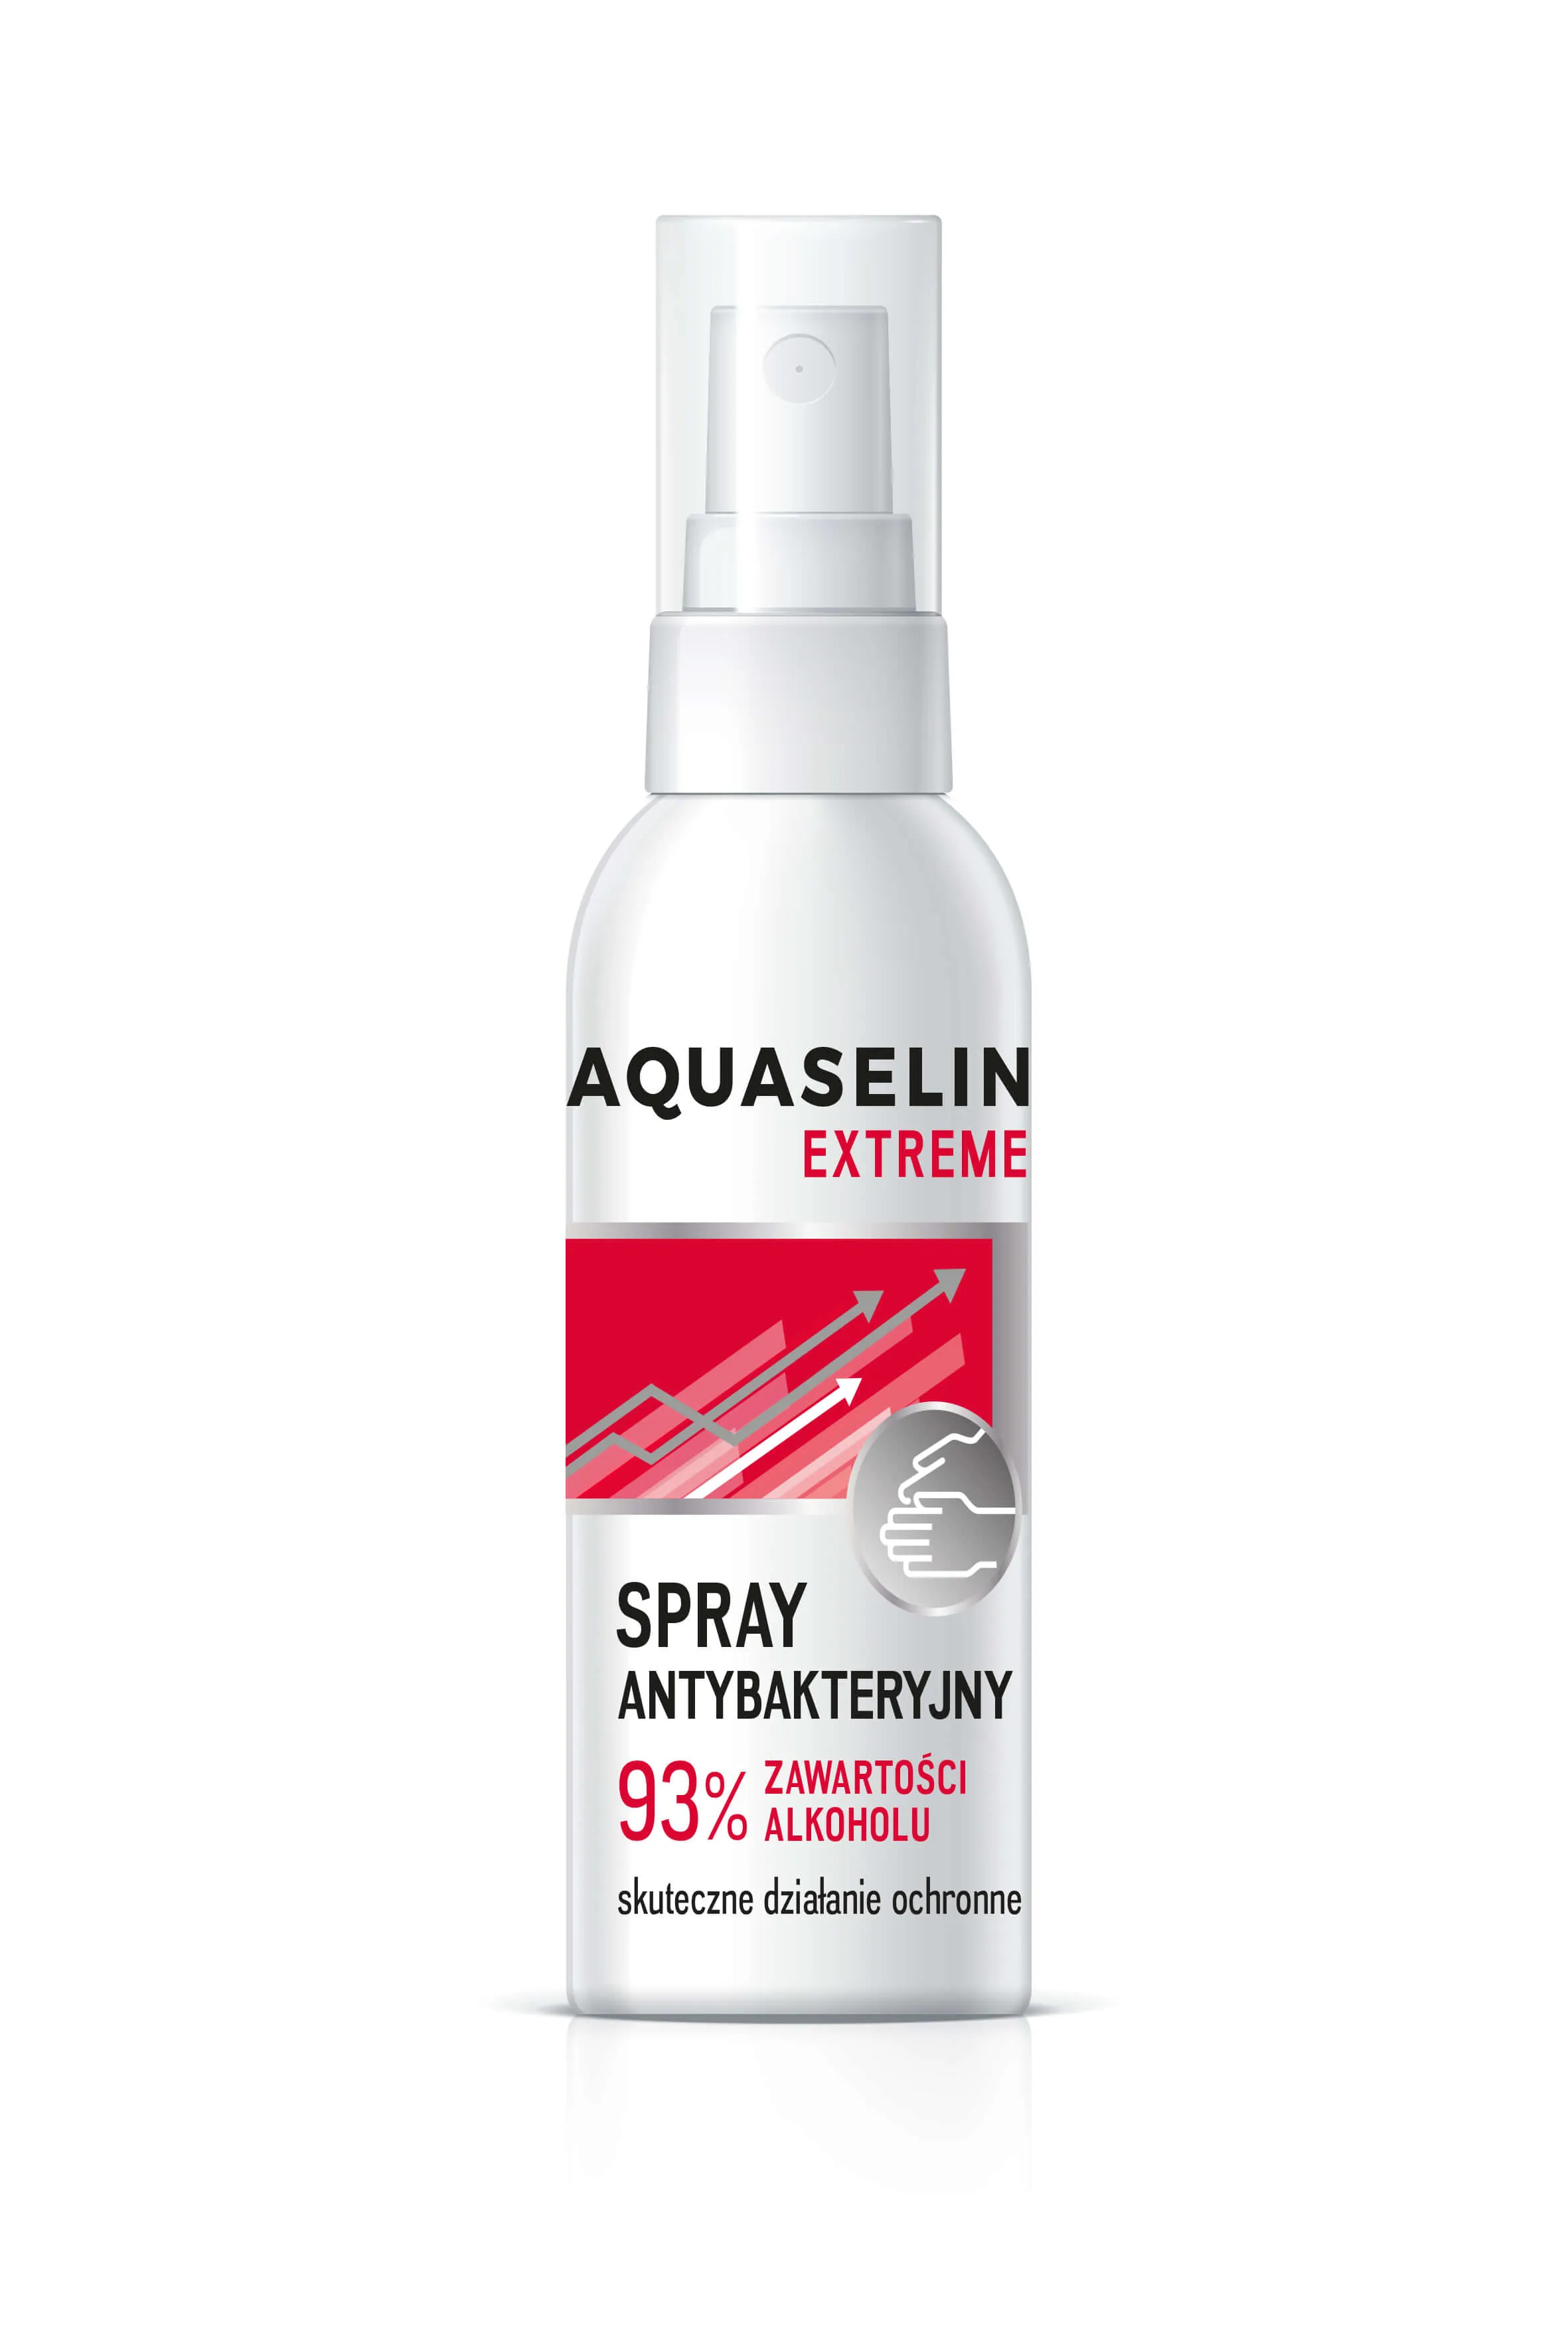 Aquaselin Extreme, spray antybakteryjny, 93 % zawartości alkoholu, 50 ml 